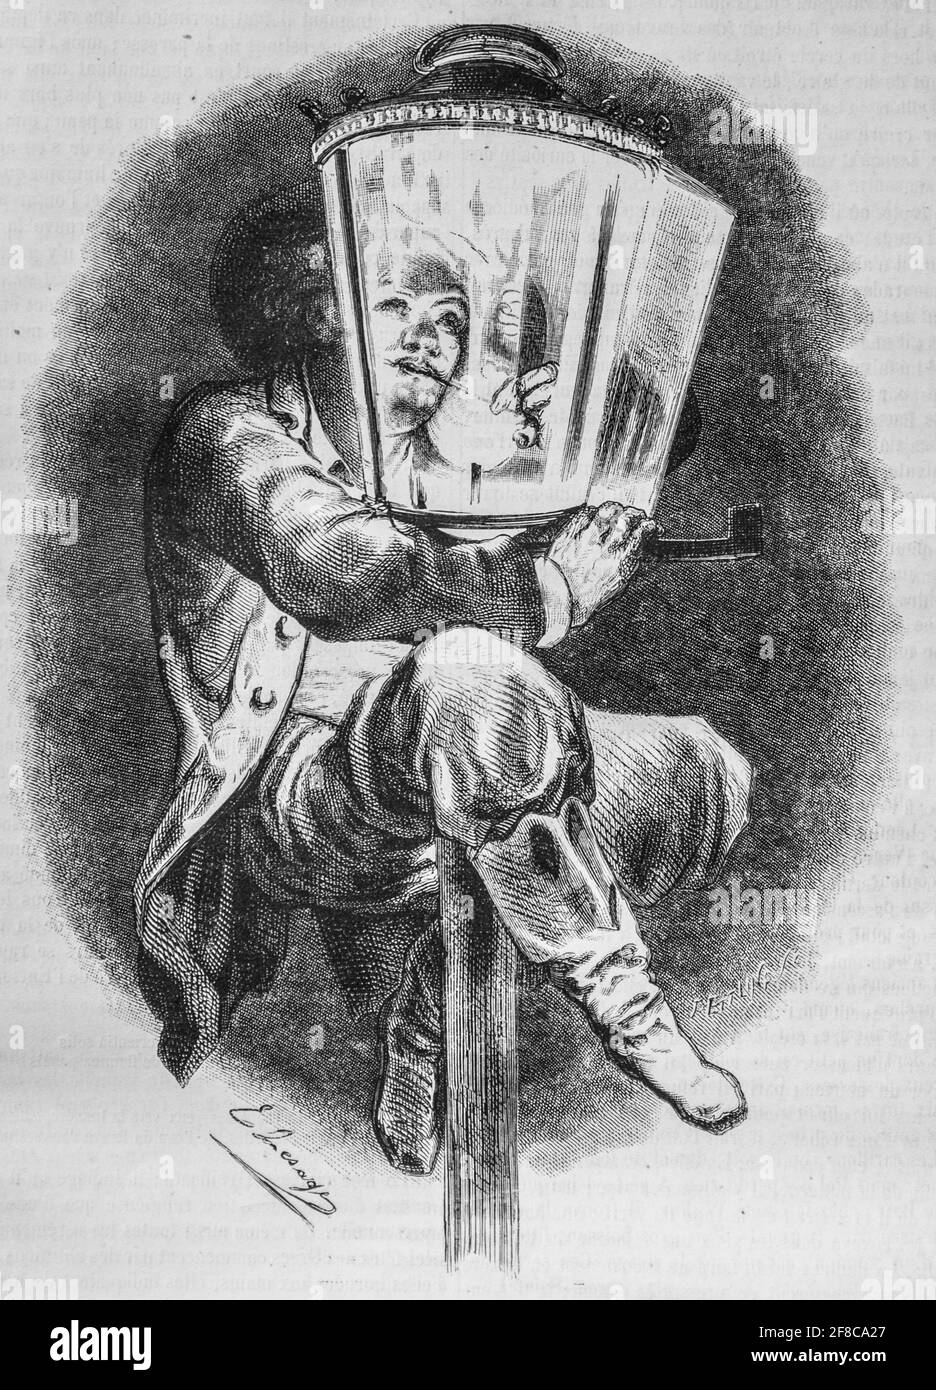 enfant juche a l'extremite d'un poteau d'eclairage, le magazin pittoresque par m. edouard charton 1870 Foto Stock